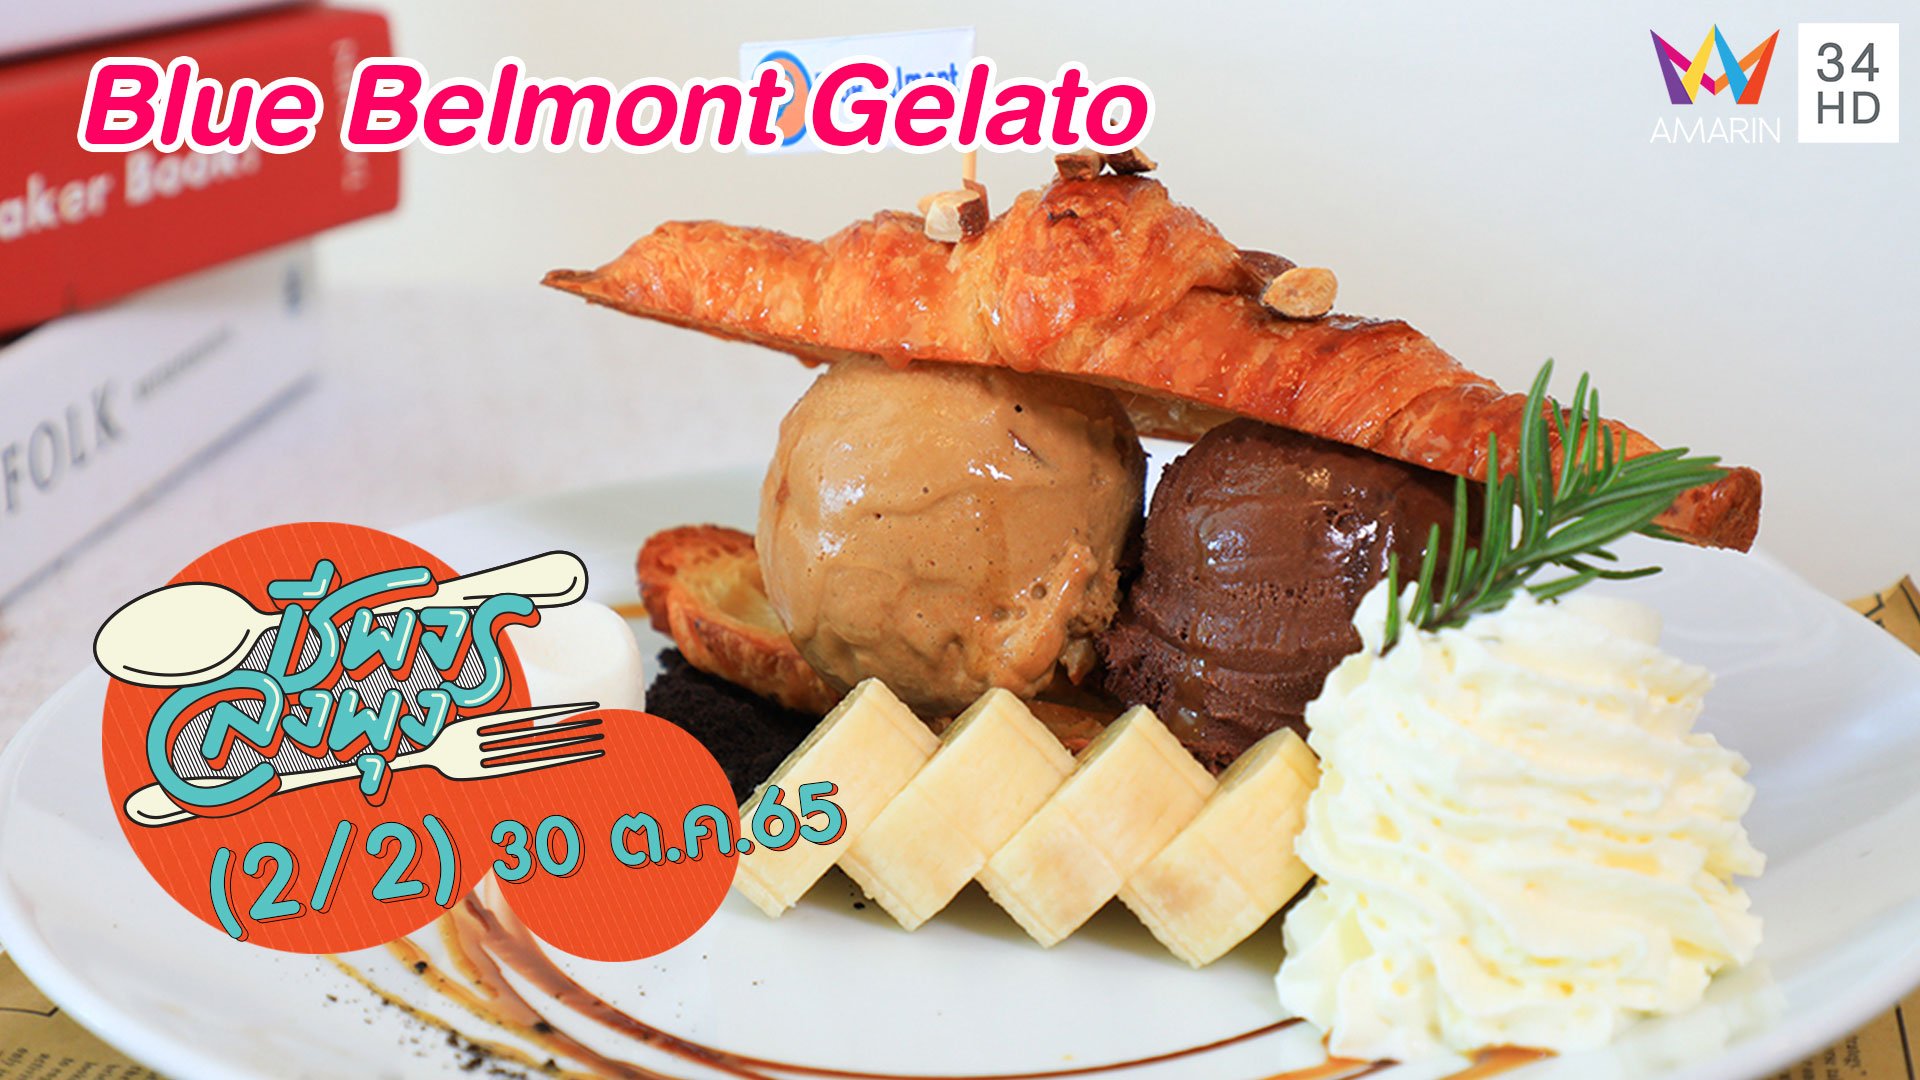 ไอศกรีมเจลาโต้หลากรสชาติ @ร้าน Blue Belmont Gelato | ชีพจรลงพุง | 30 ต.ค. 65 (2/2) | AMARIN TVHD34